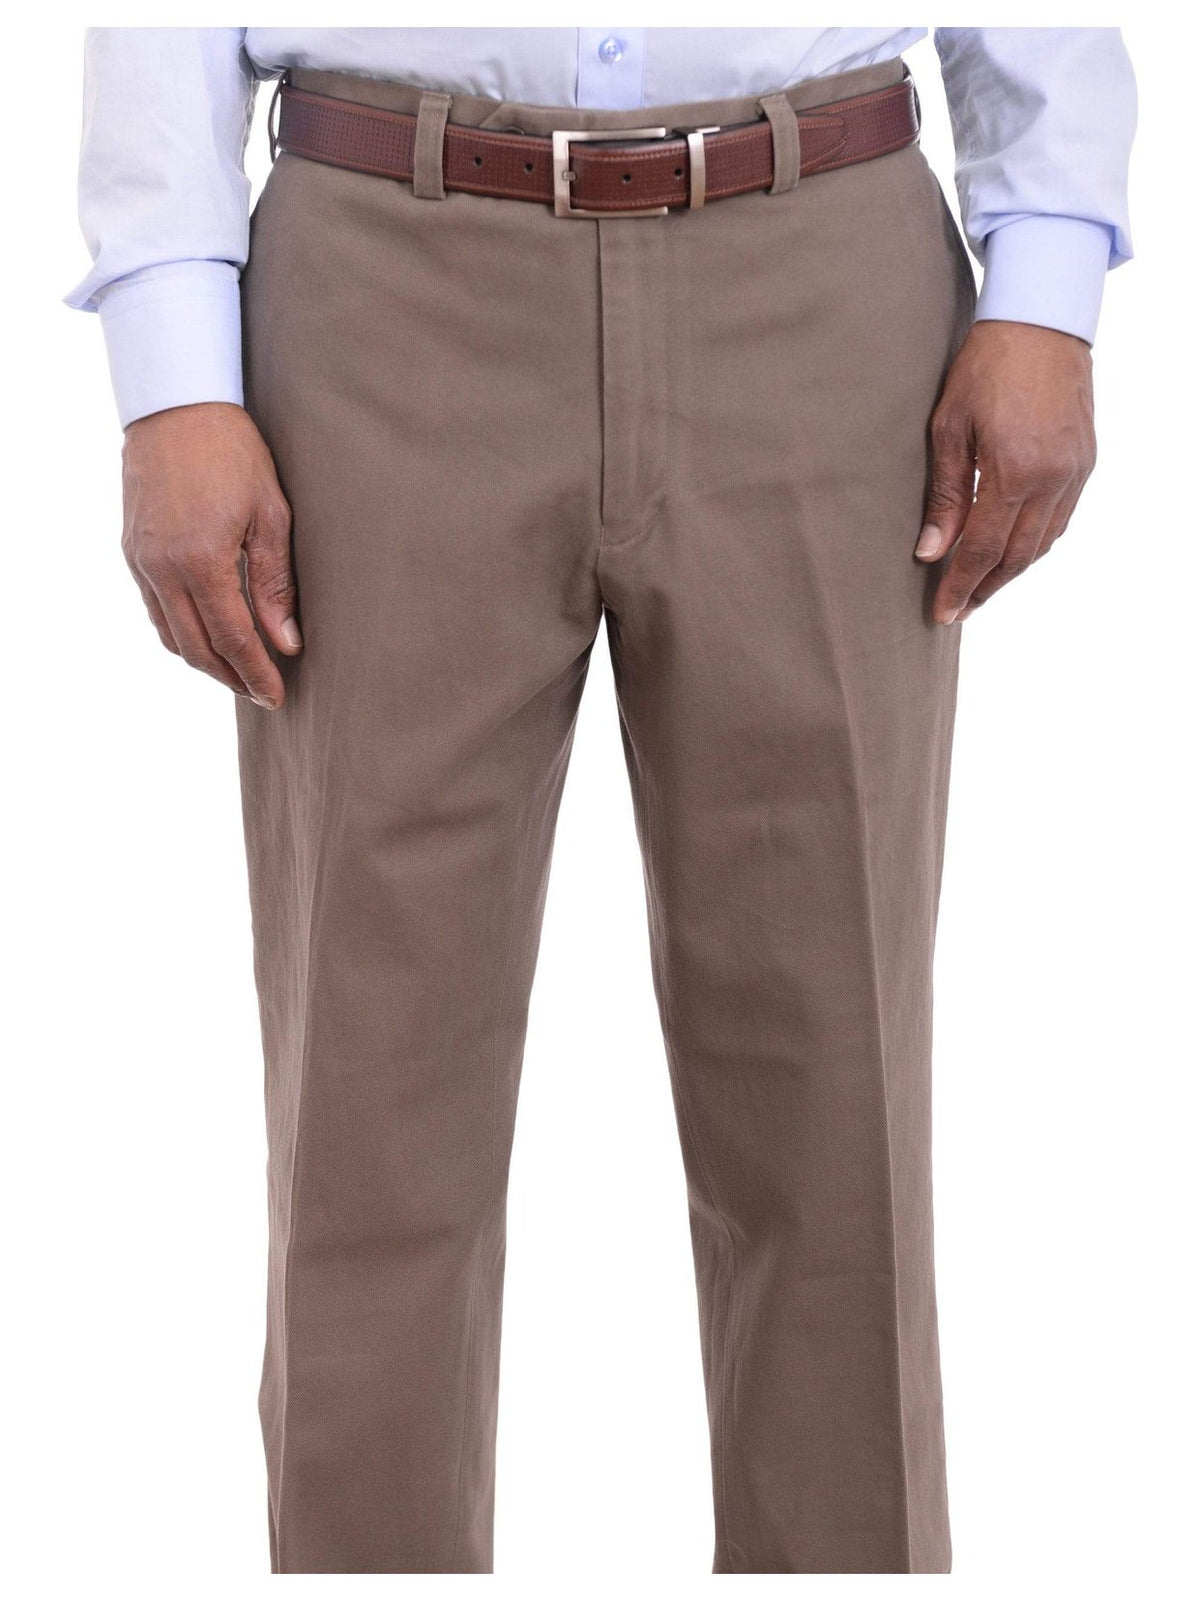 Ralph Lauren Classic Fit Solid Taupe Flat Front Washable Cotton Khaki Pants - The Suit Depot